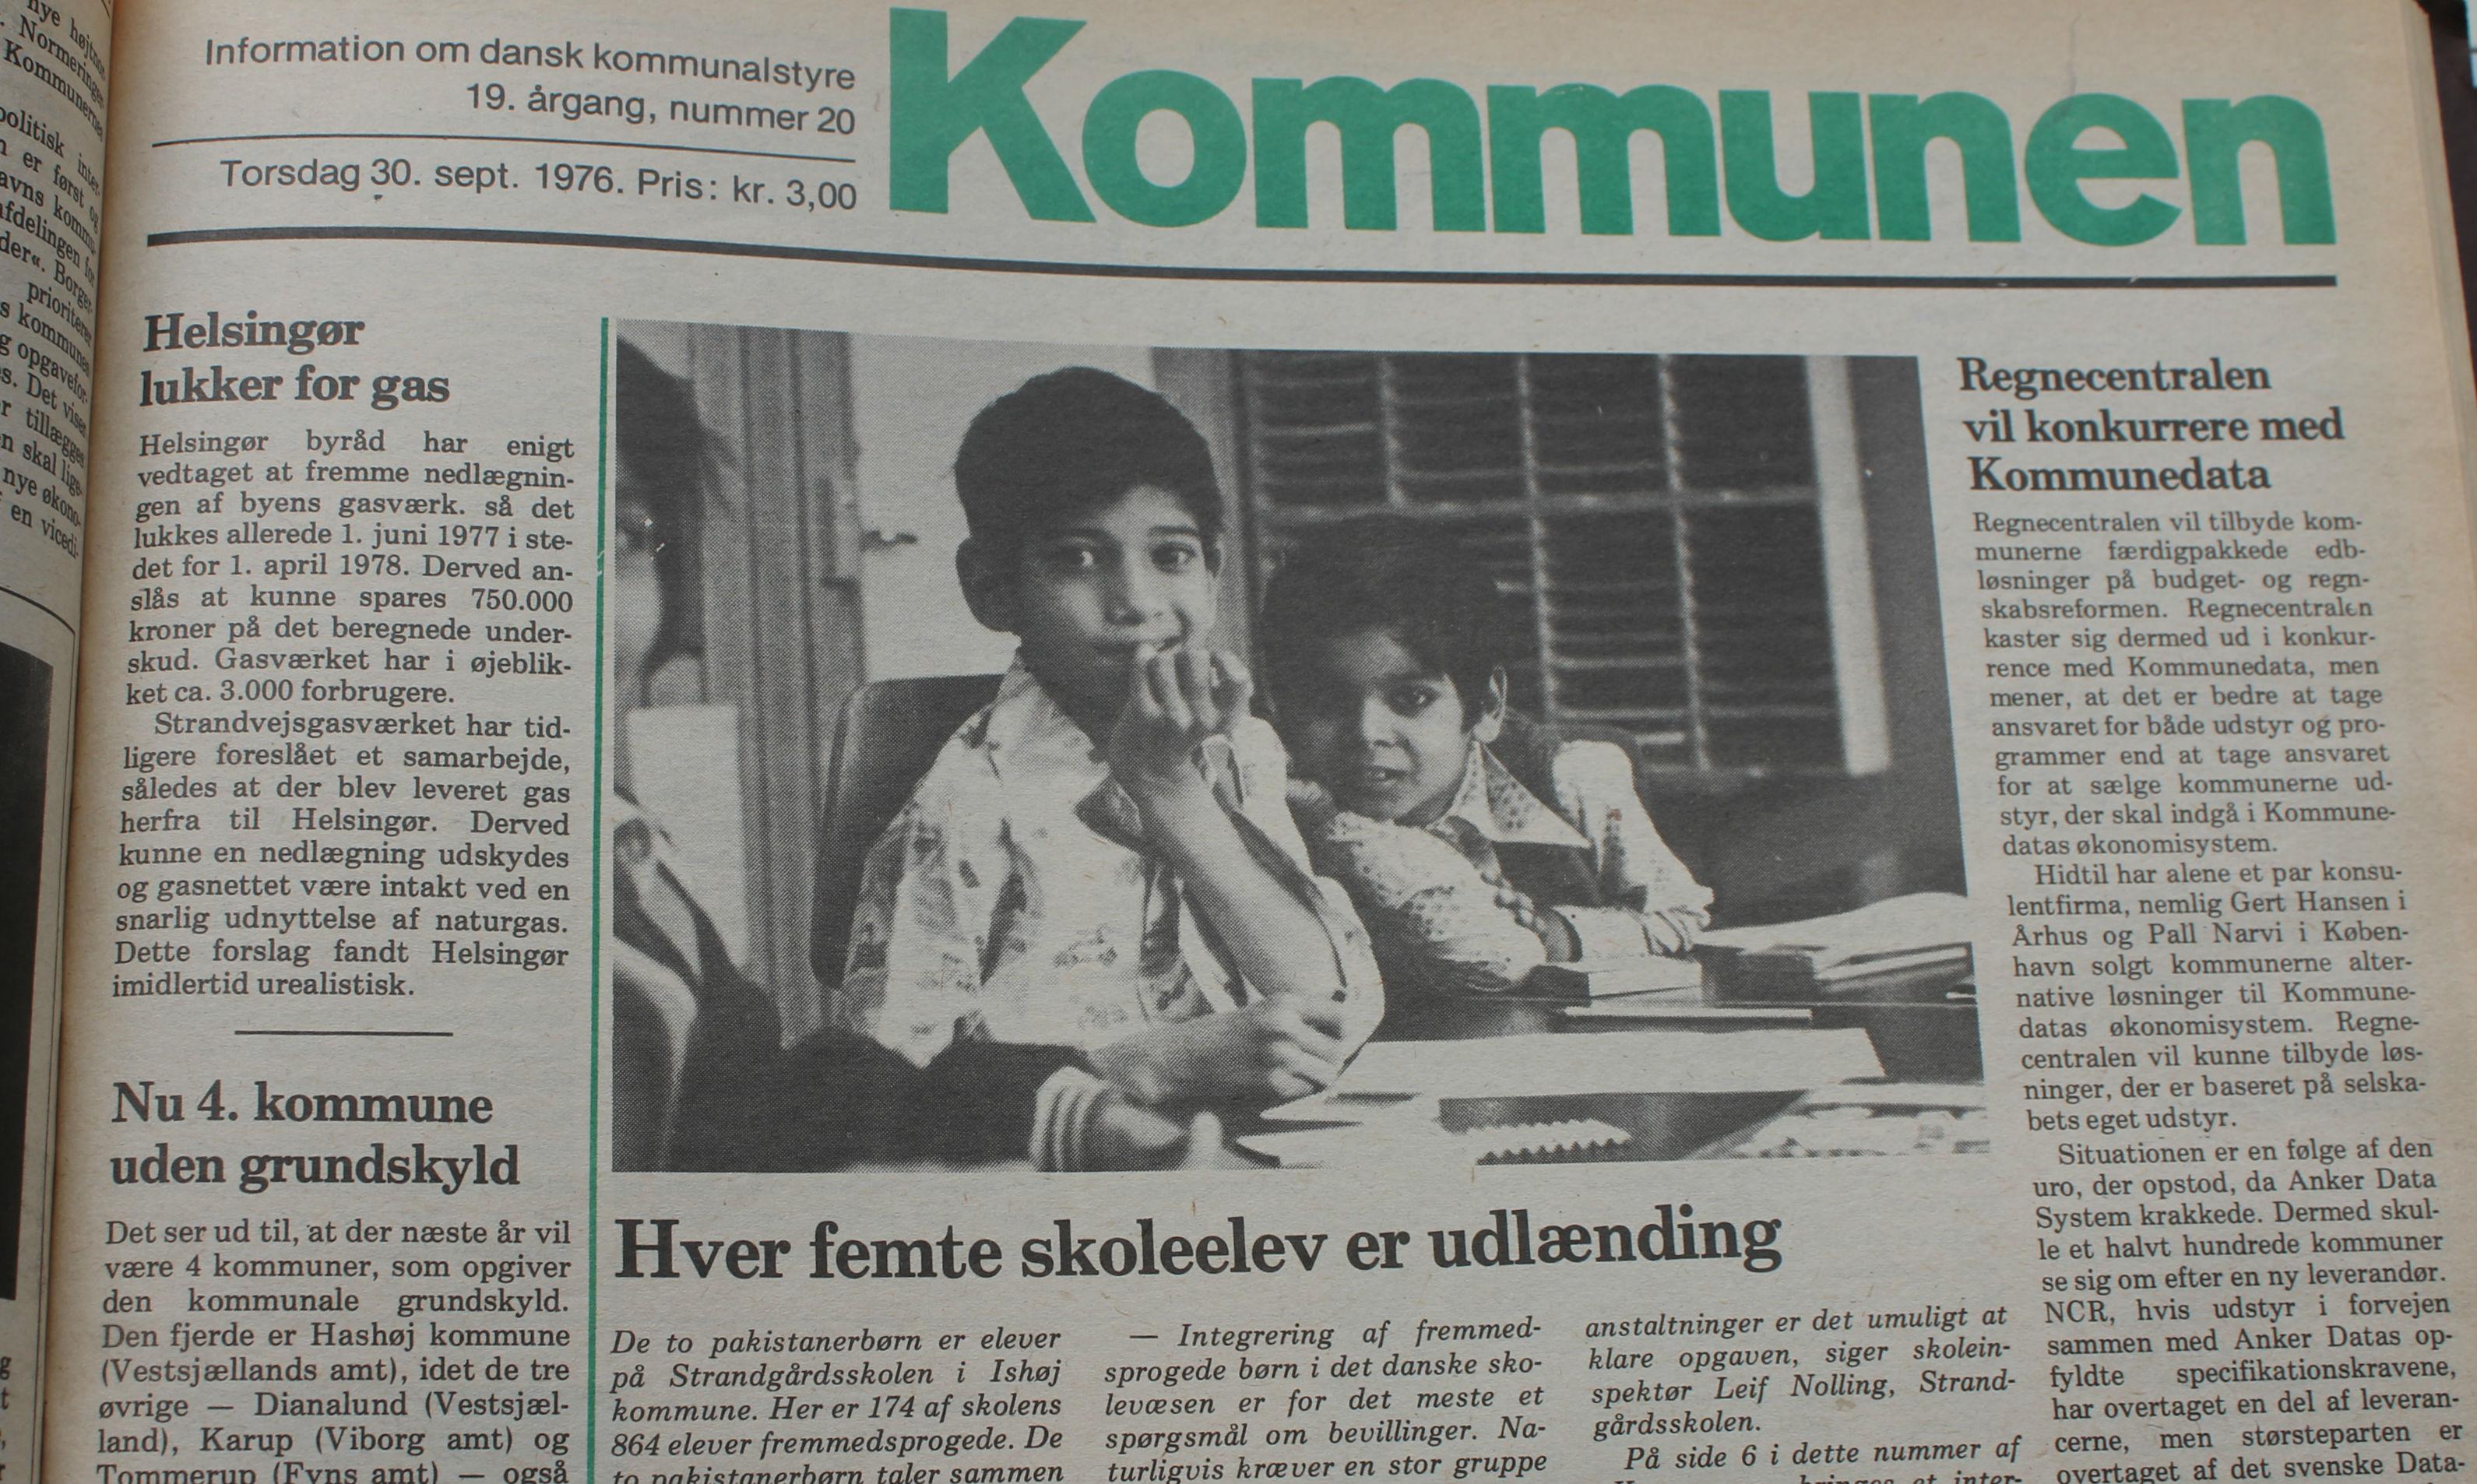 Tophistorien i Kommunen 30. 9. 1976 handlede om den usædvanlige kommuneskole i Ishøj, hvor 174 af 864 børn ifølge artiklen var fremmedsprogede.